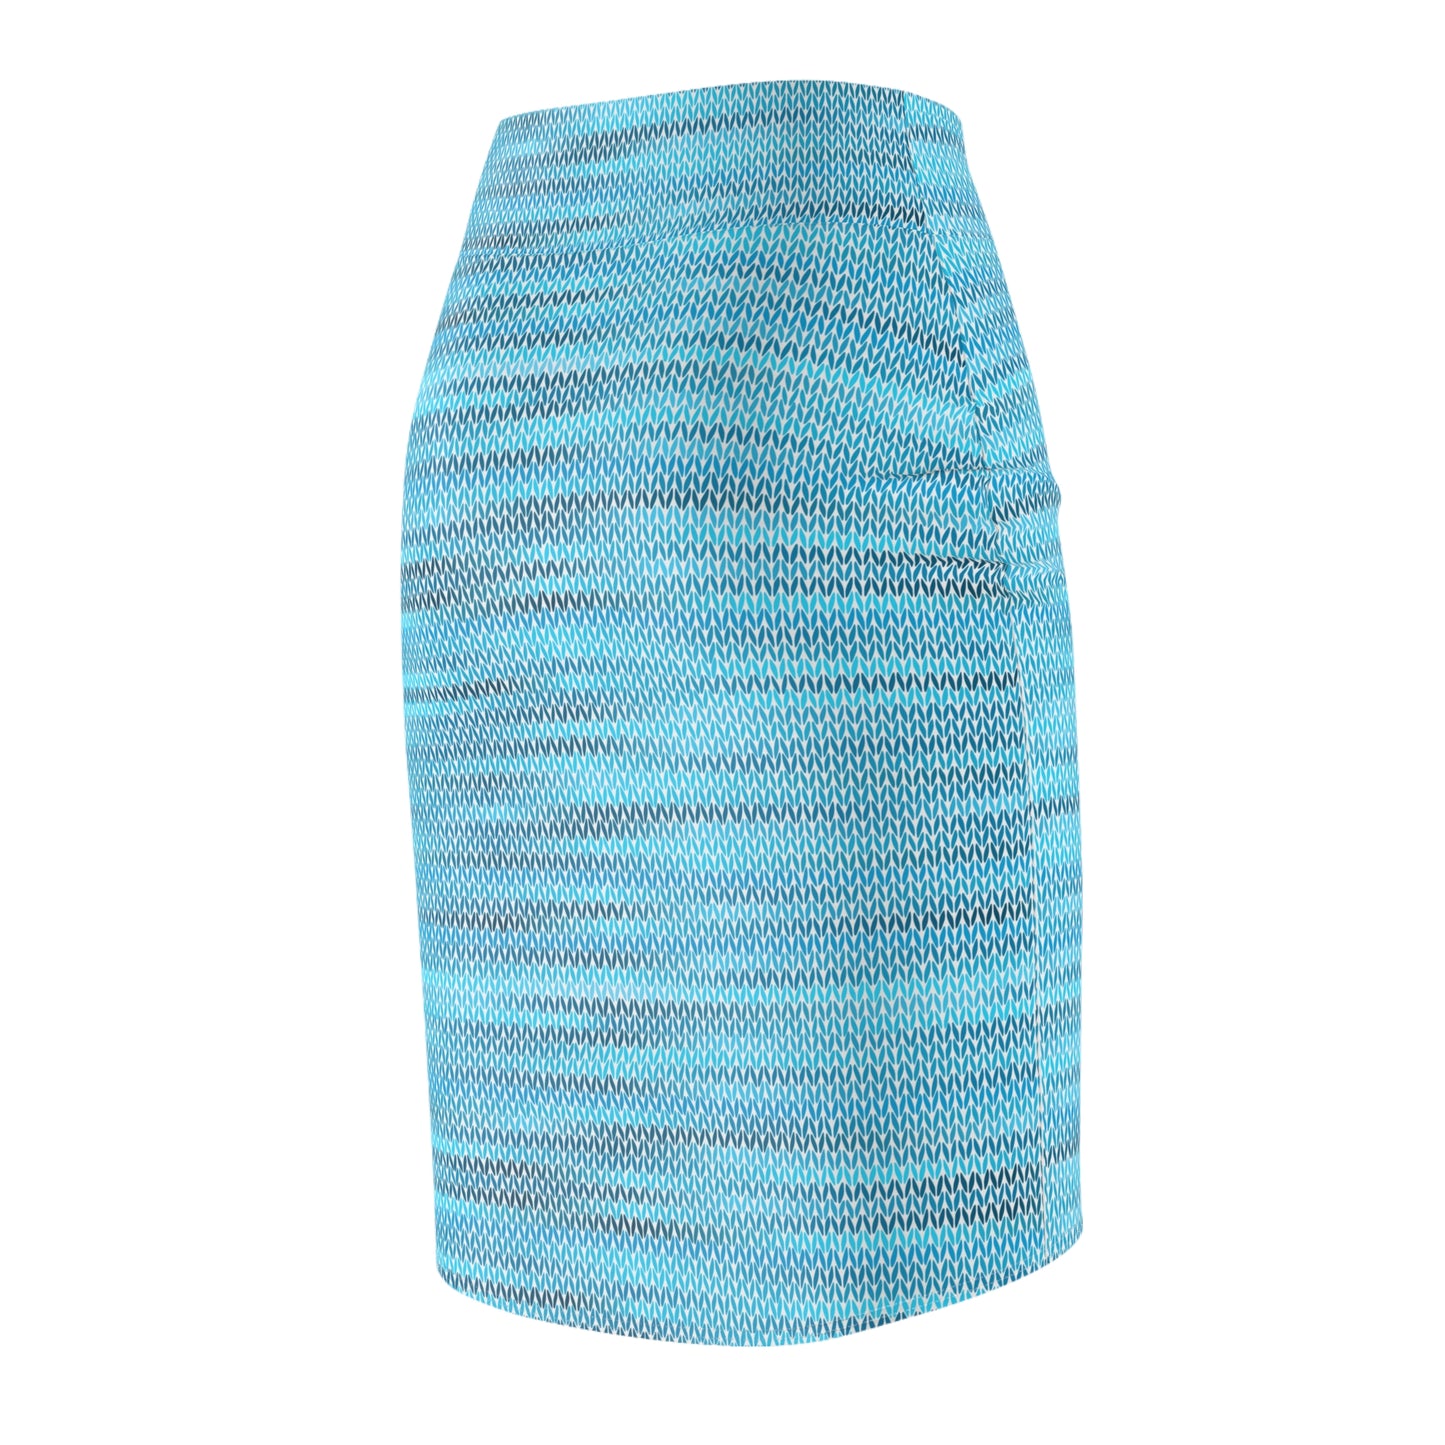 Vintage Retro Classic Blue Weave  Pencil Skirt